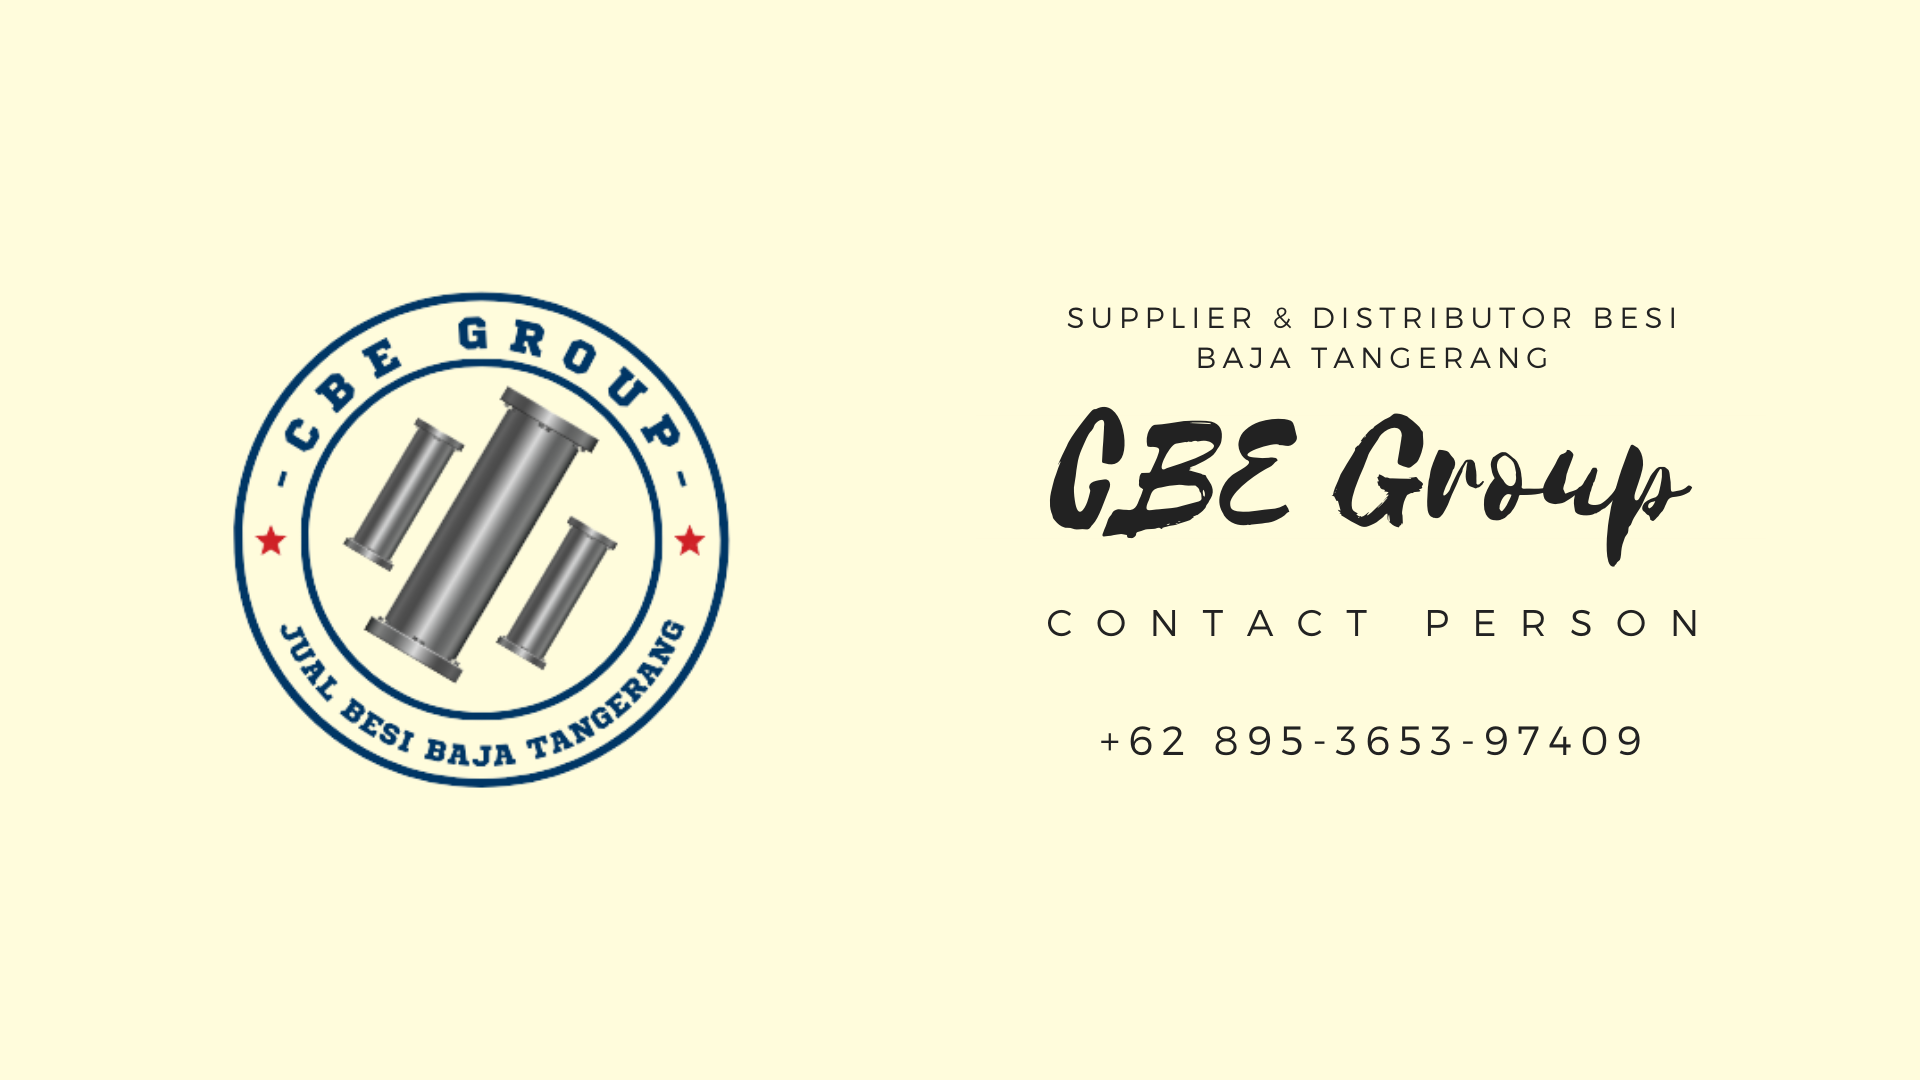 Gambar Jual Besi Baja Tangerang - Supplier & Distributor Besi Baja Tangerang